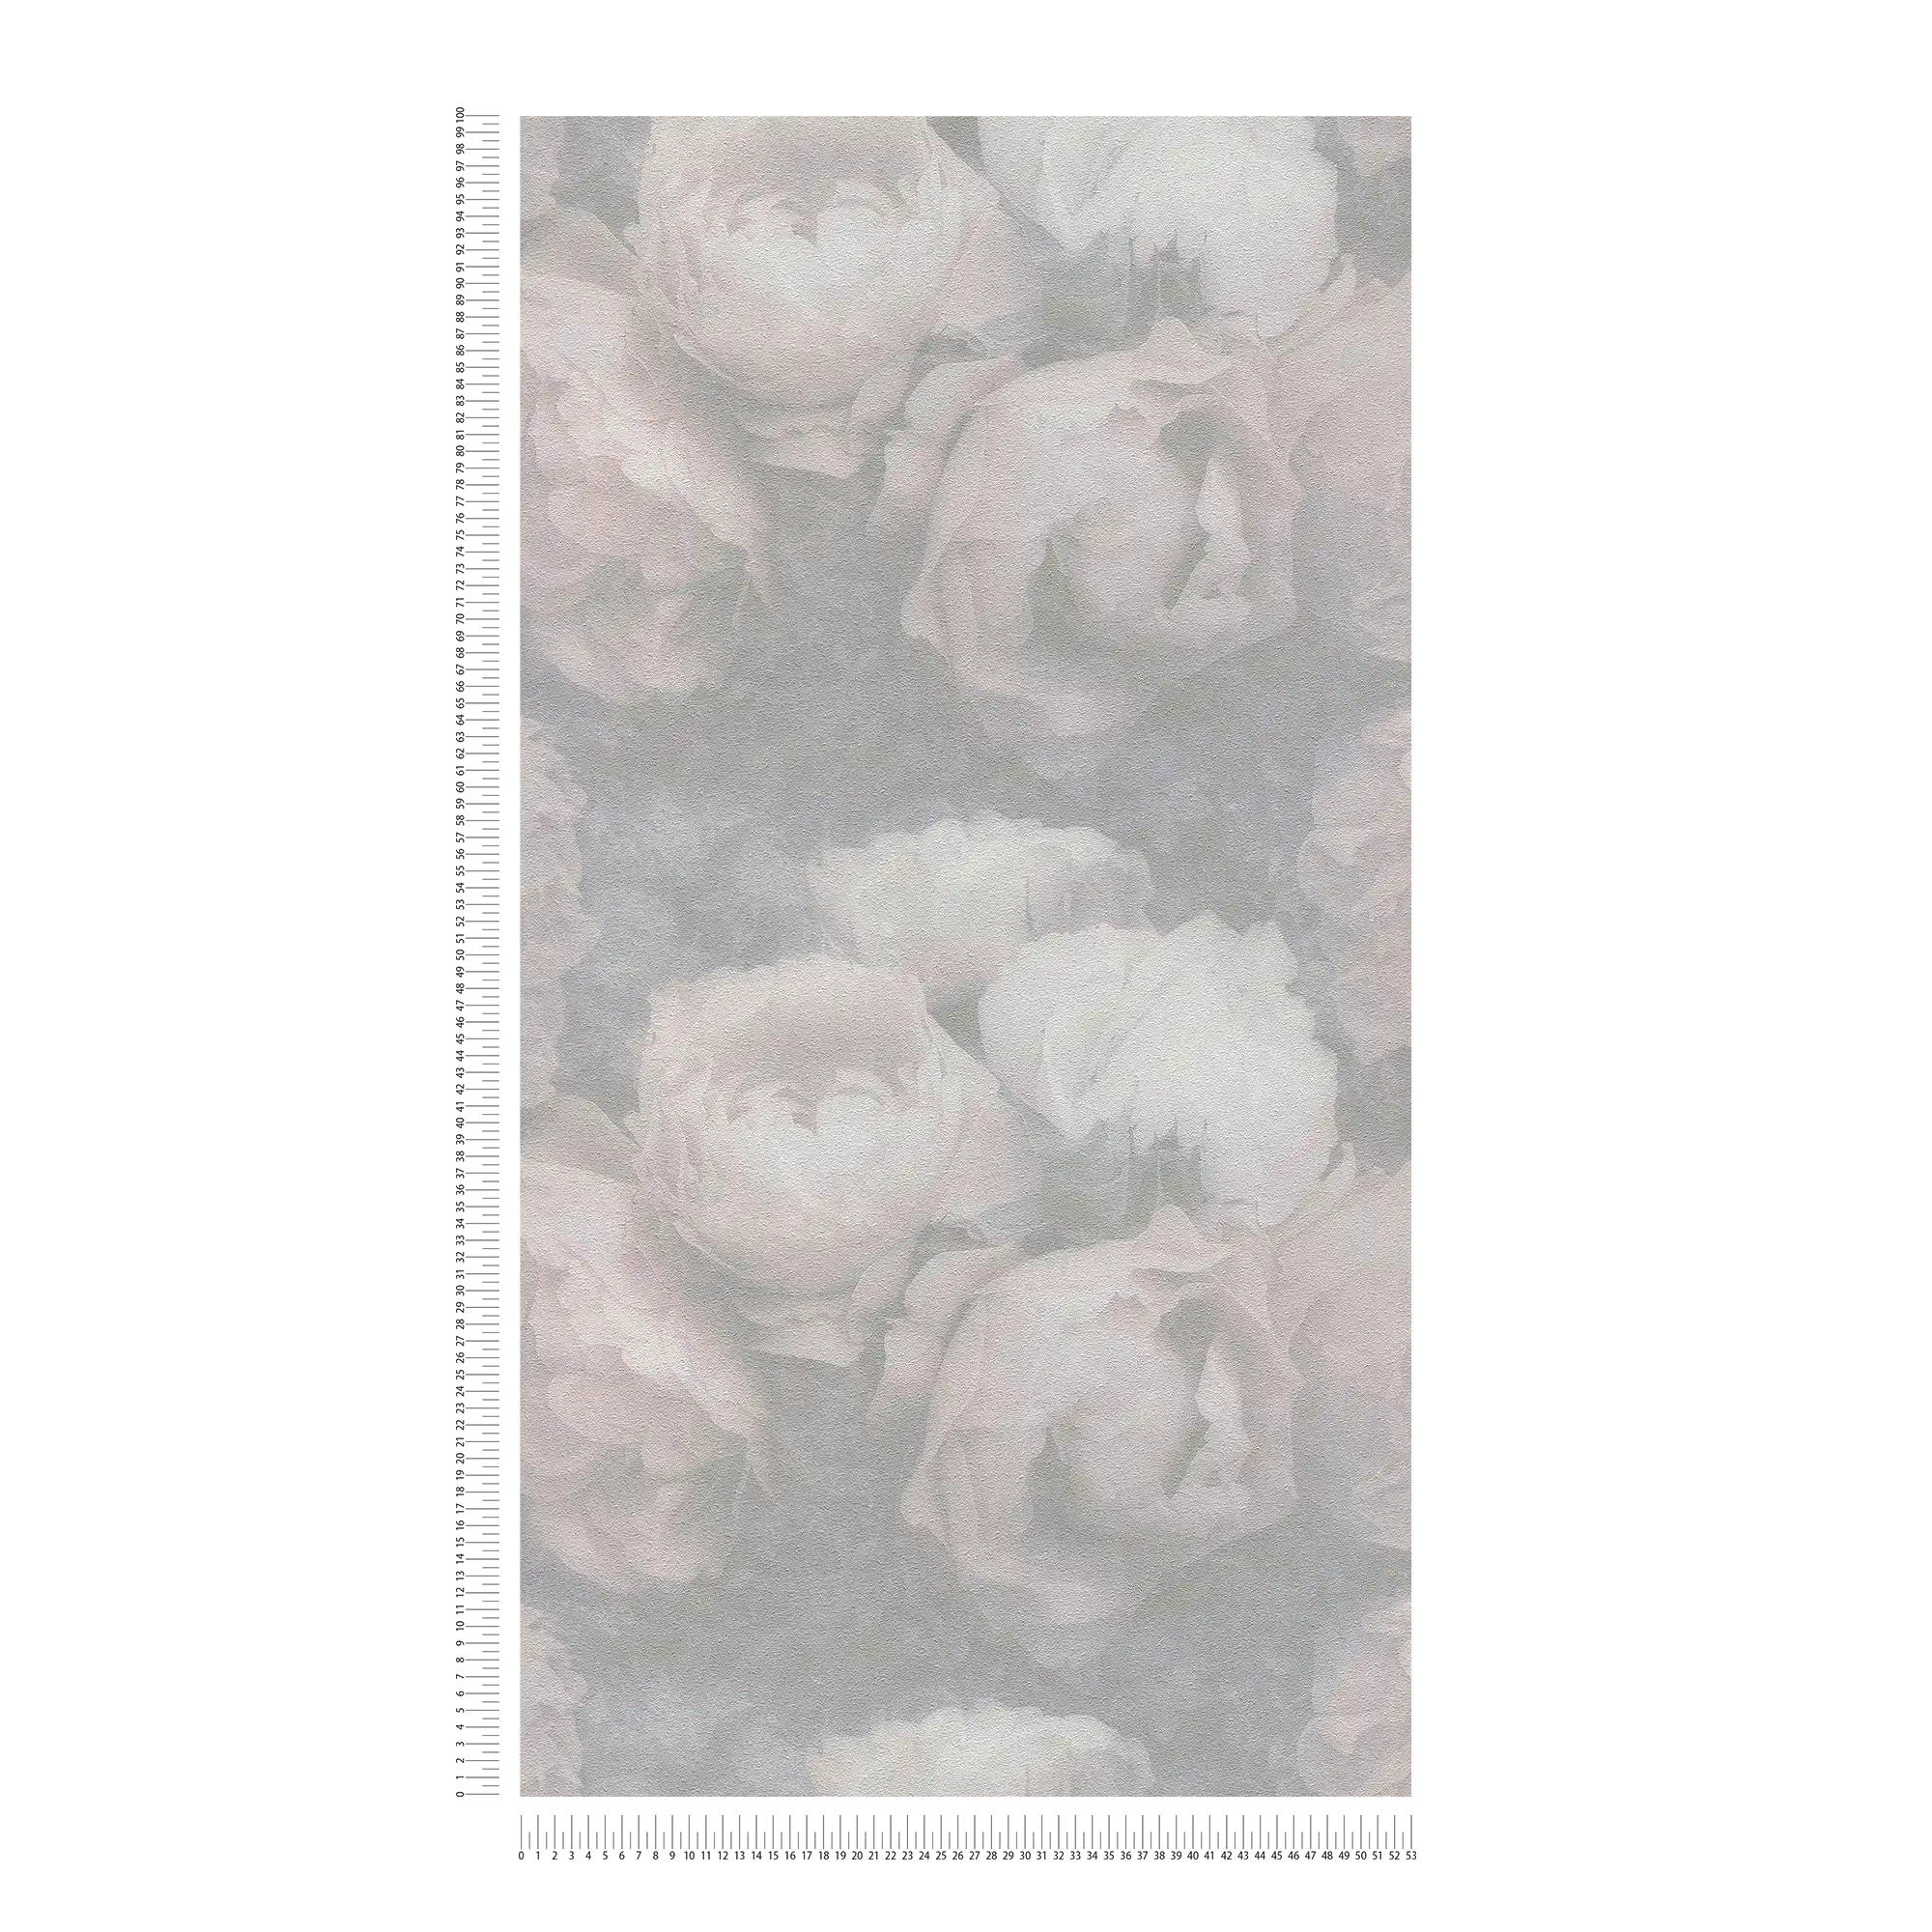             Pastell Tapete mit Pfingstrosen – Rosa, Grau, Weiß
        